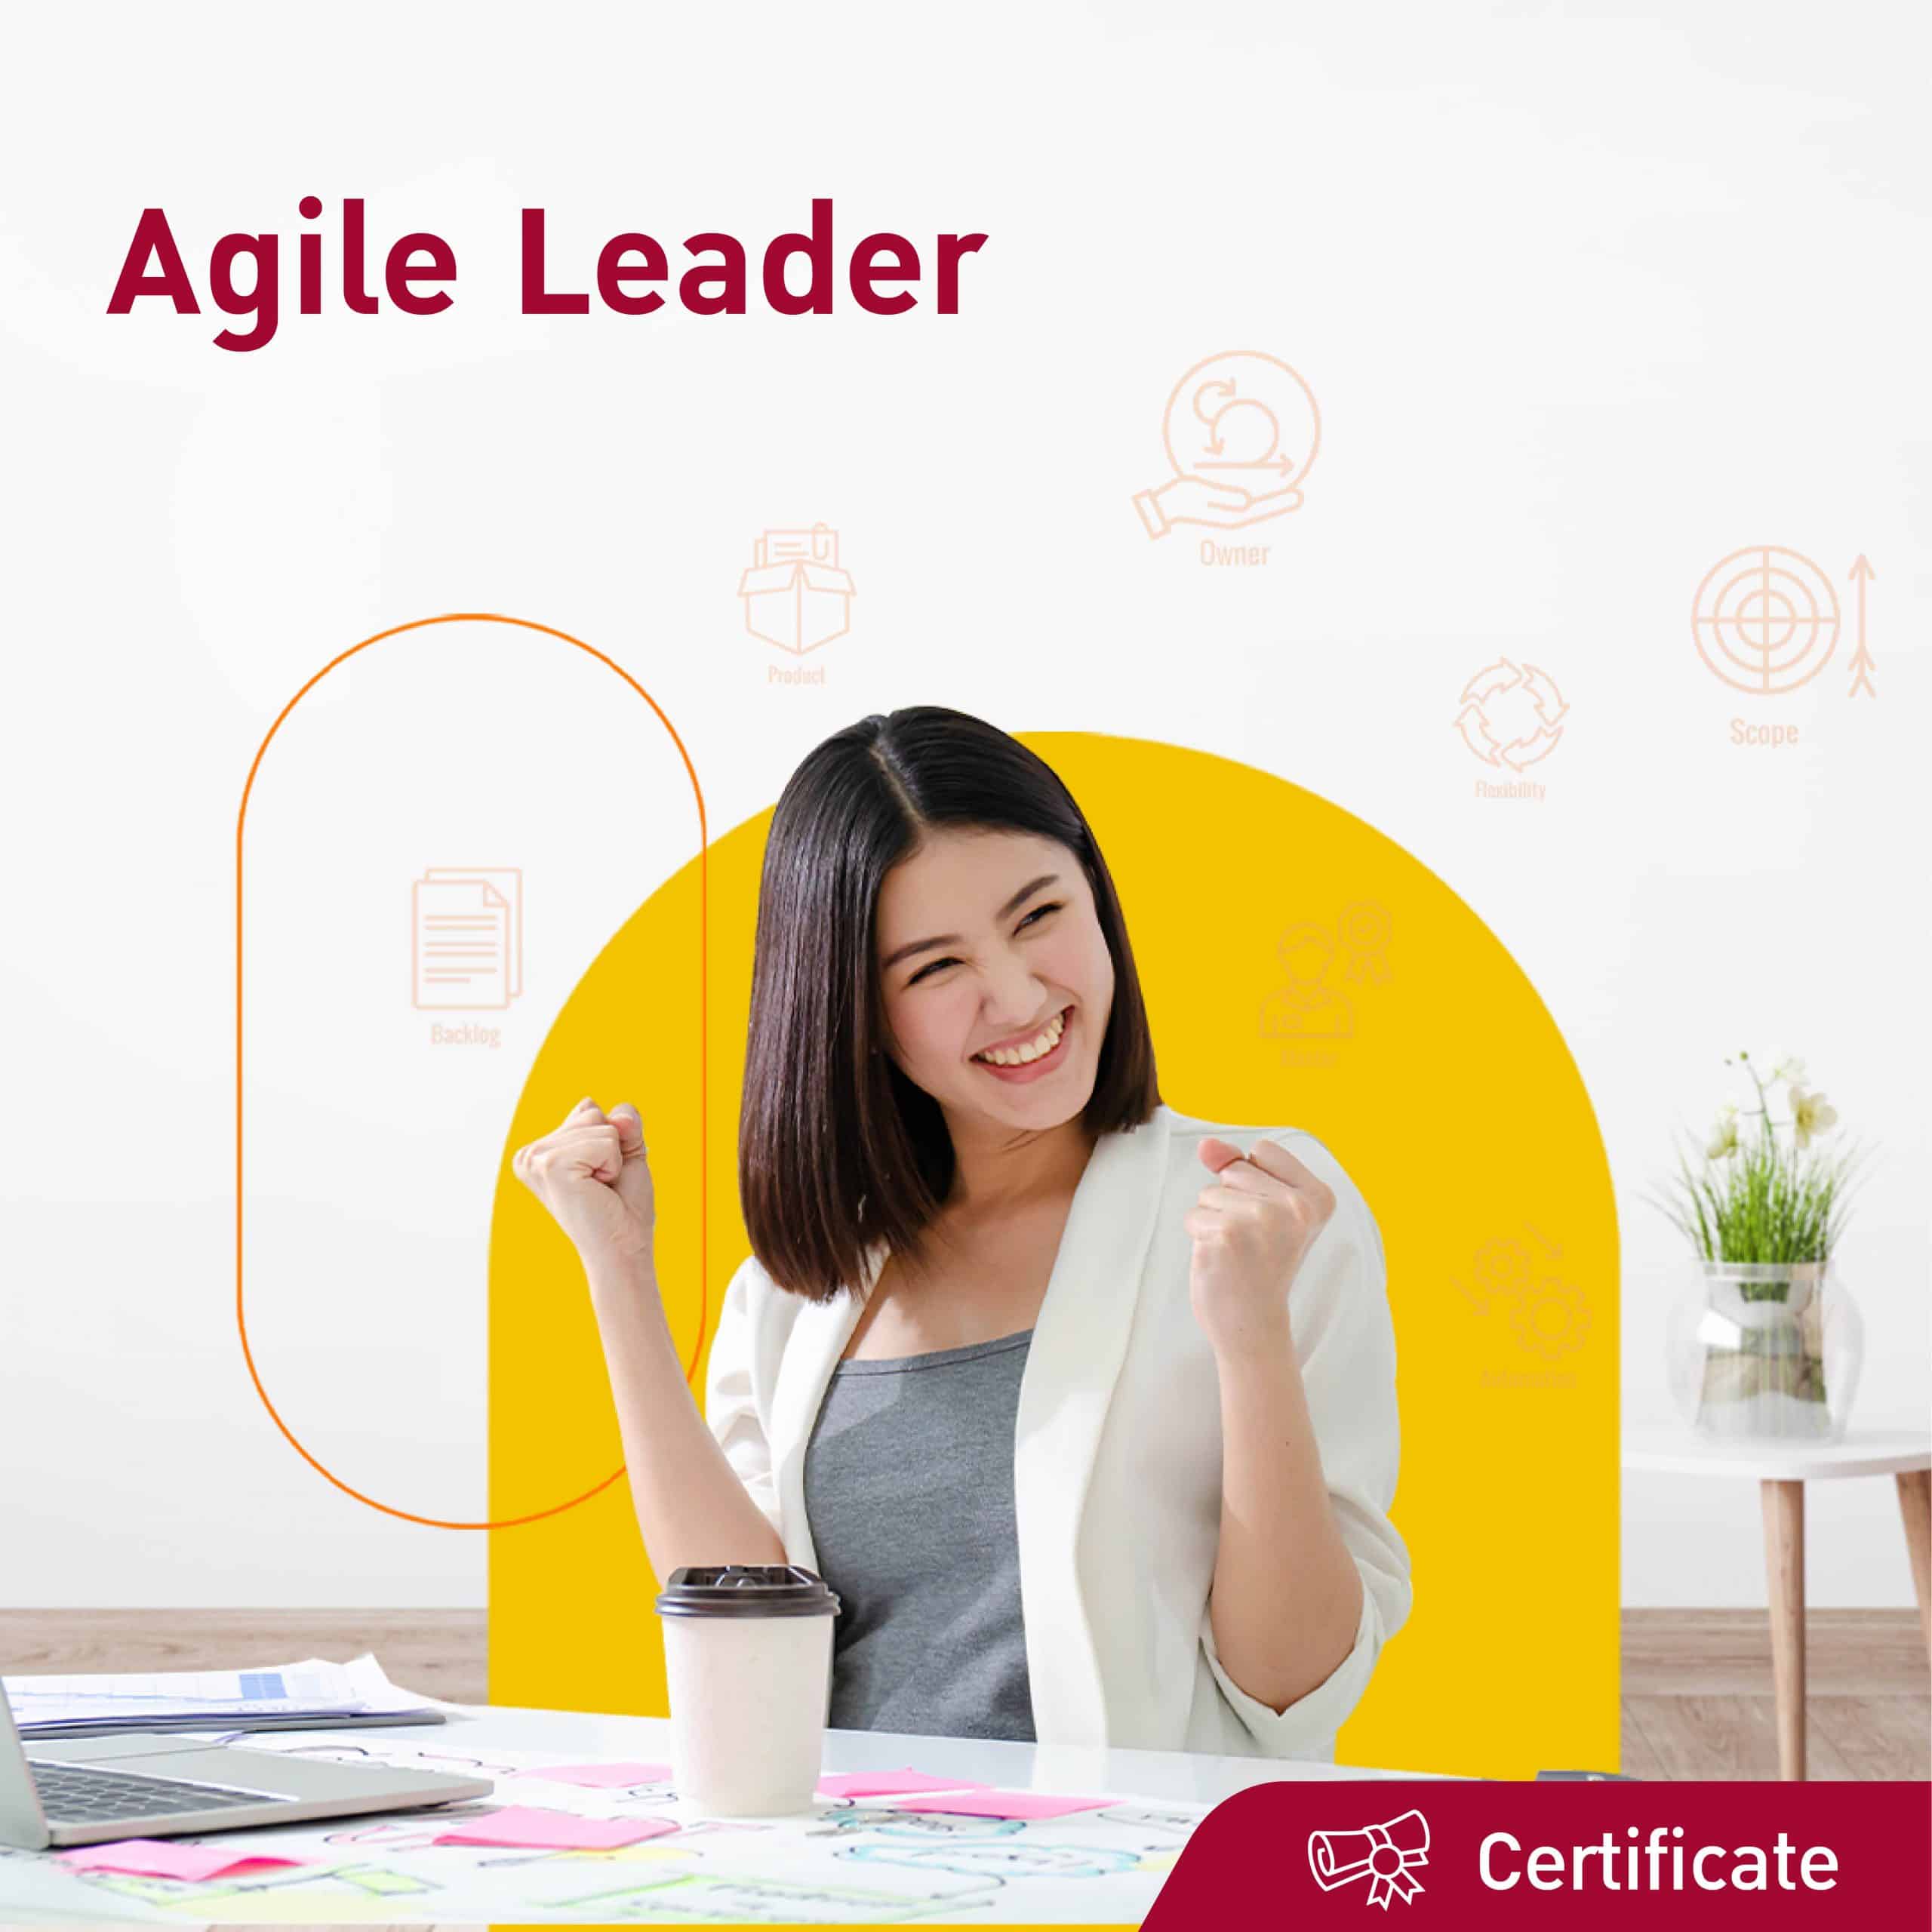 AW_Jobs Base Learning_Agile Leader_1080x1080